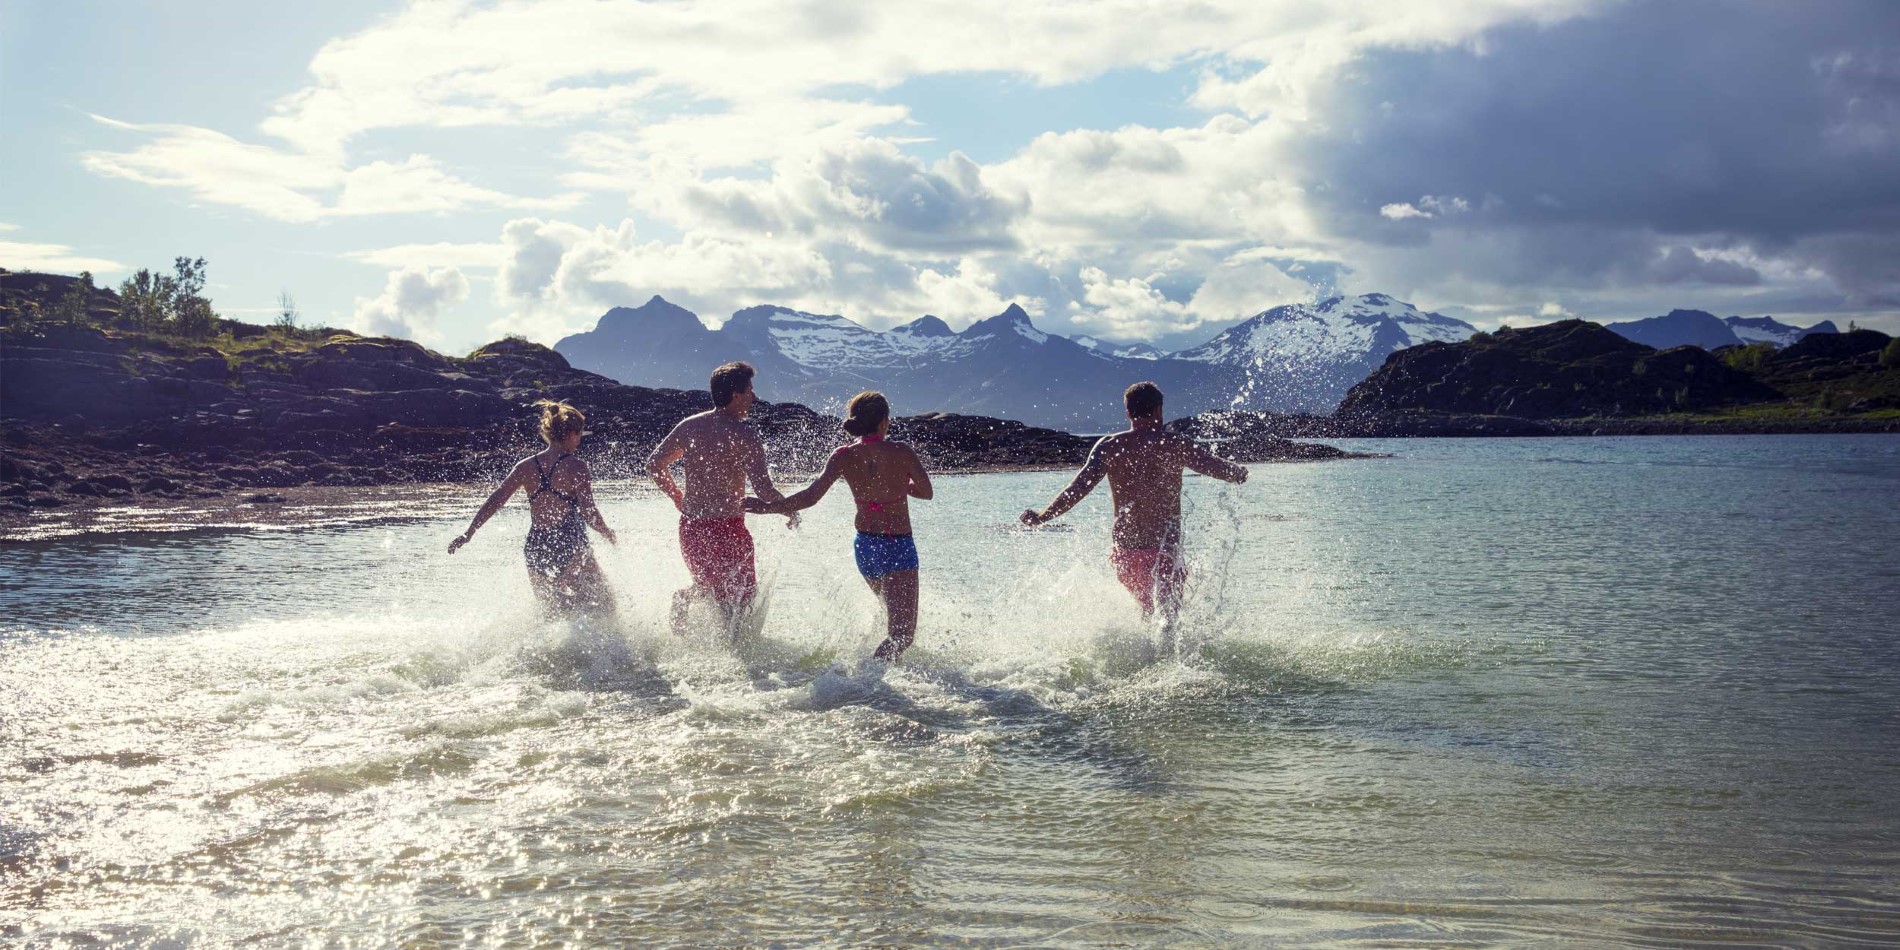 Allez nager dans les eaux fraîches de Lofoten